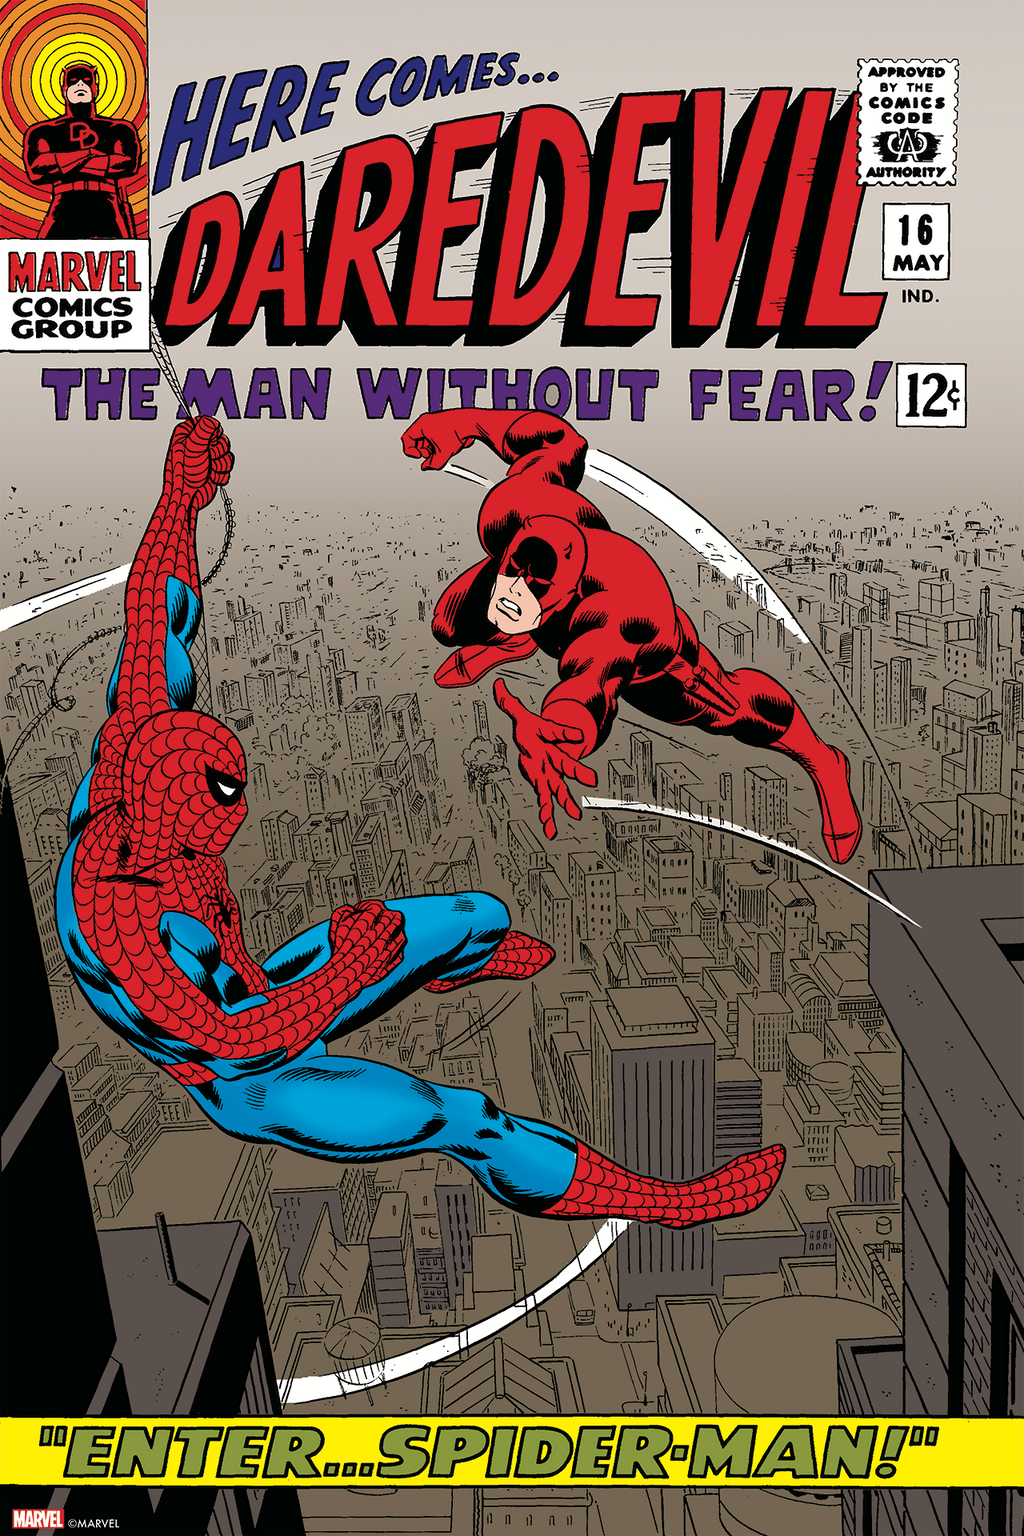 Daredevil #16 (1966) by John Romita & Frank Giacoia